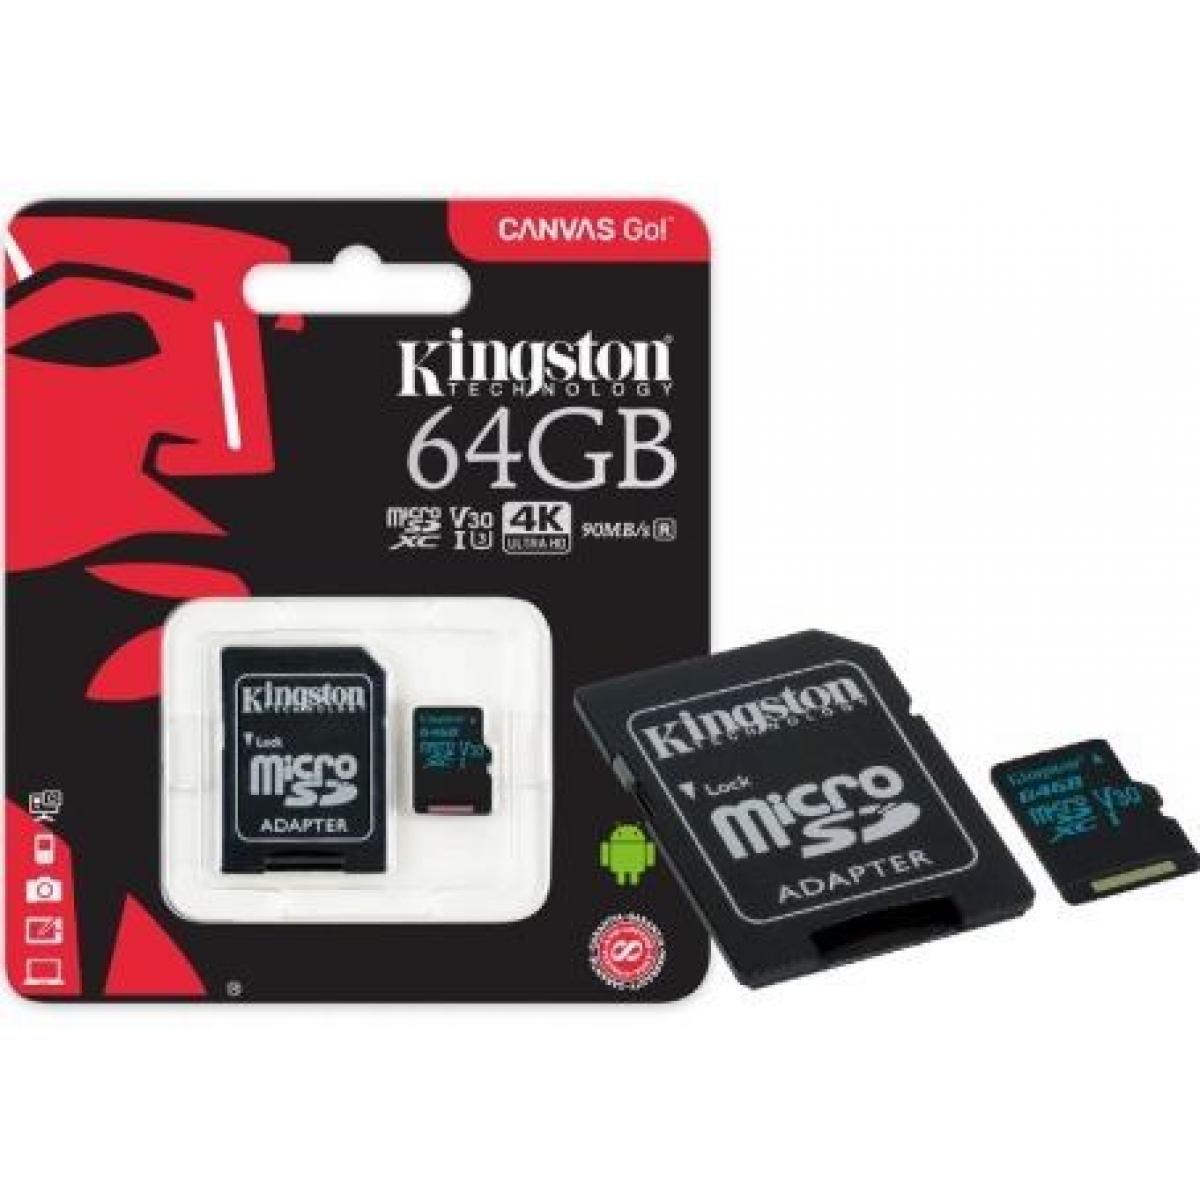 Uhs 3 память. MICROSD Kingston 64. Карты памяти Kingston Micro 64gb. 1 Карта памяти Kingston MICROSDXC 64 ГБ.